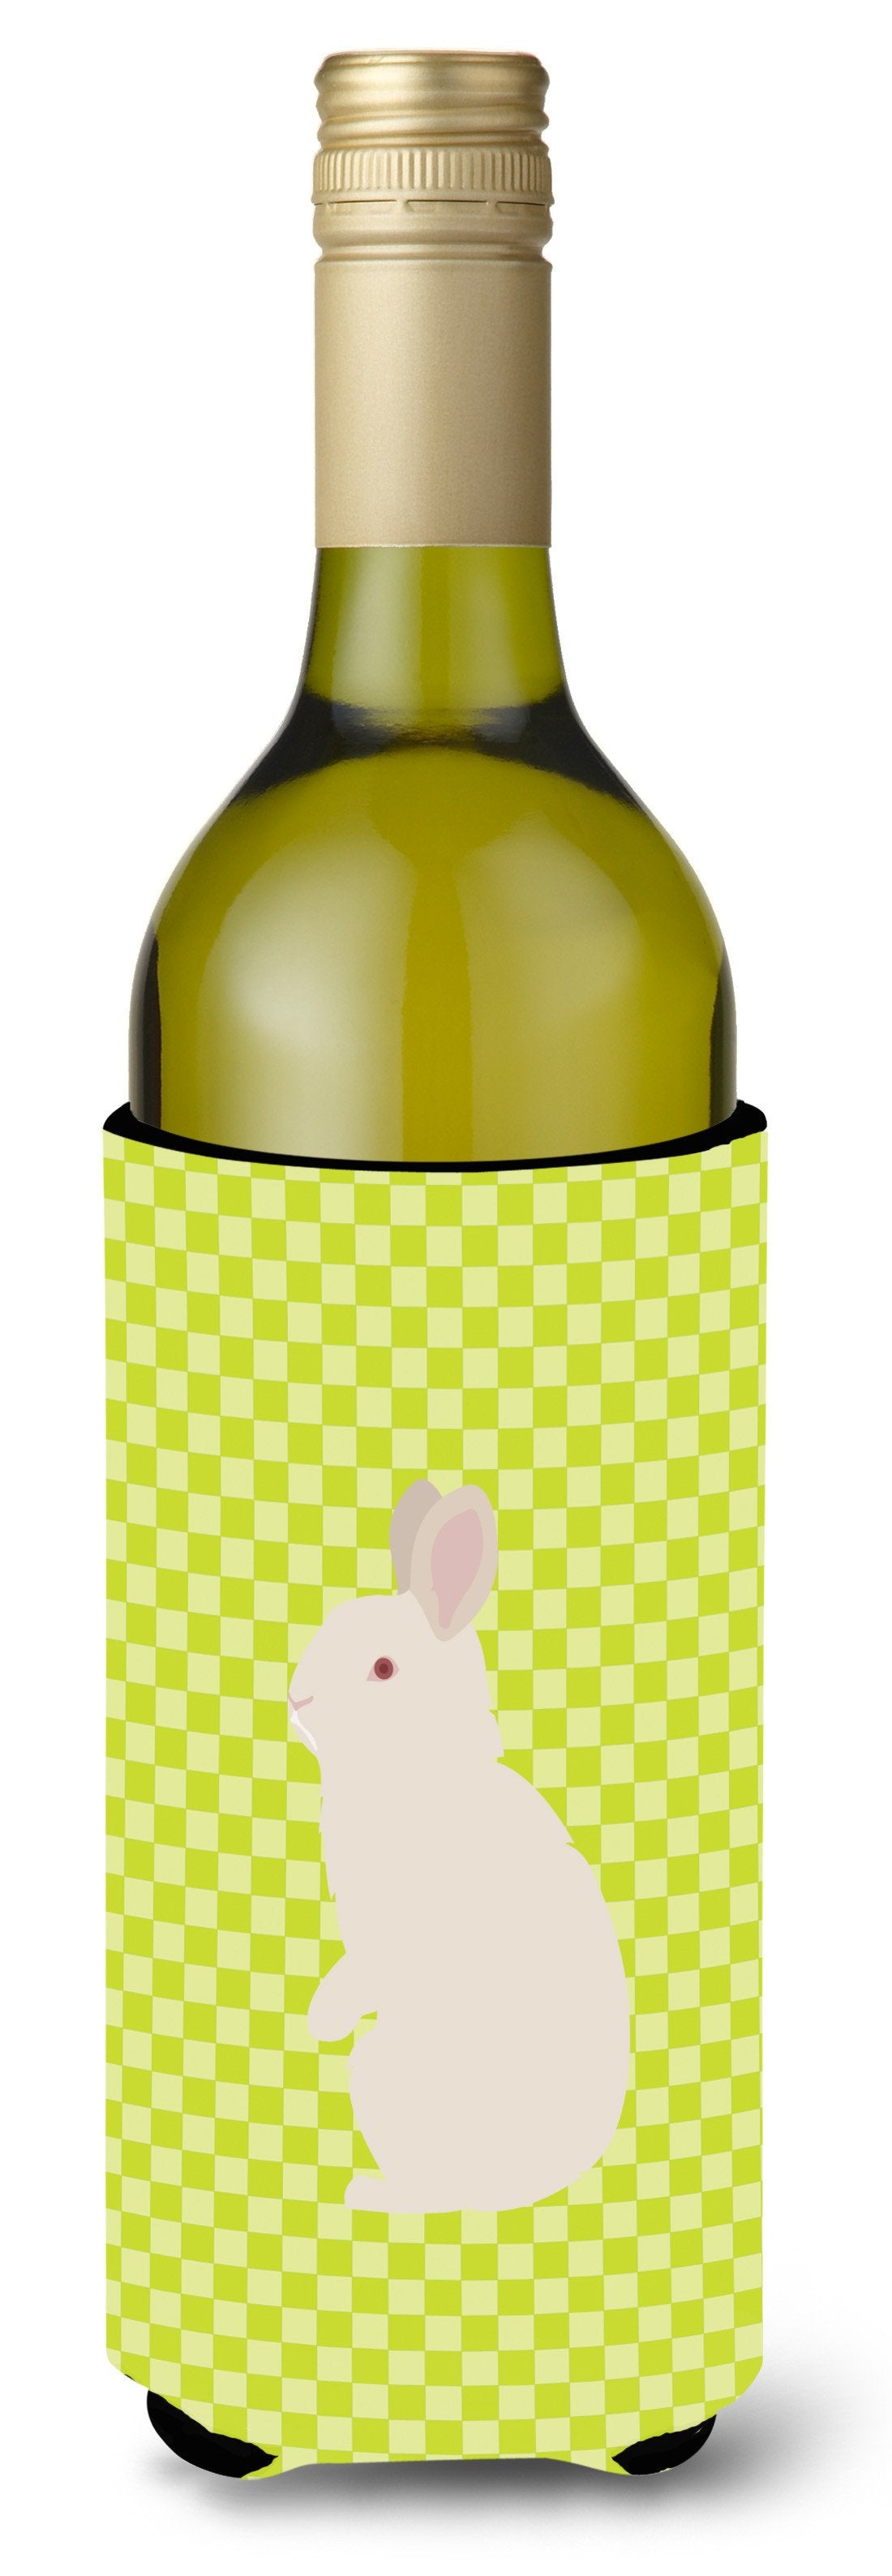 New Zealand White Rabbit Green Wine Bottle Beverge Insulator Hugger BB7791LITERK by Caroline's Treasures